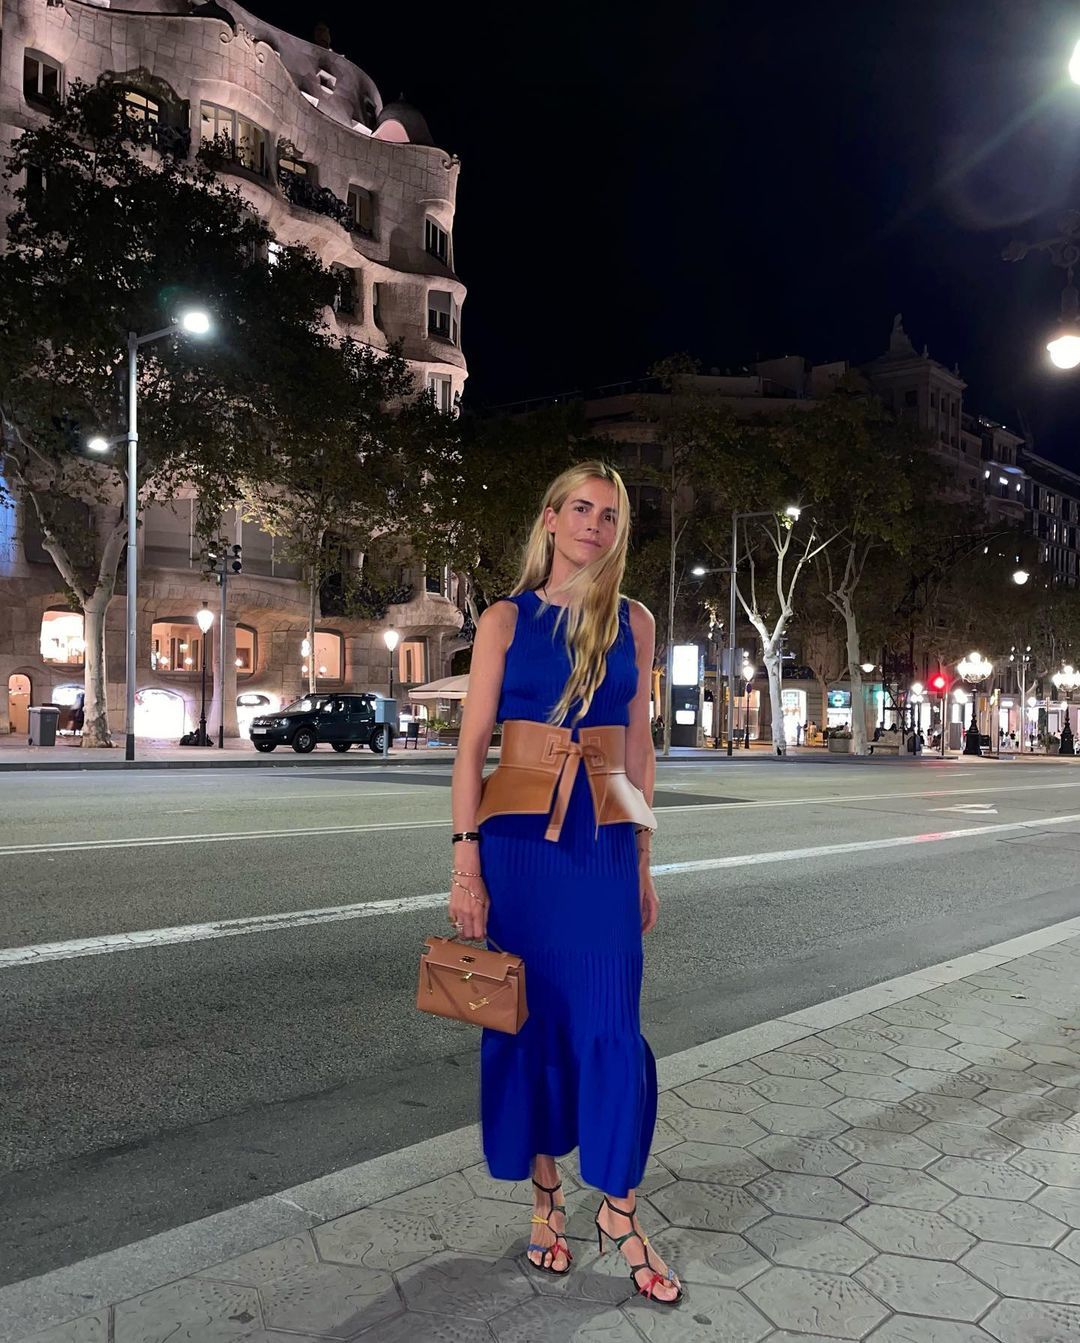 El look de Blanca Miró para celebrar su cumpleaños, los accesorios llamativos que han conquistado Instagram